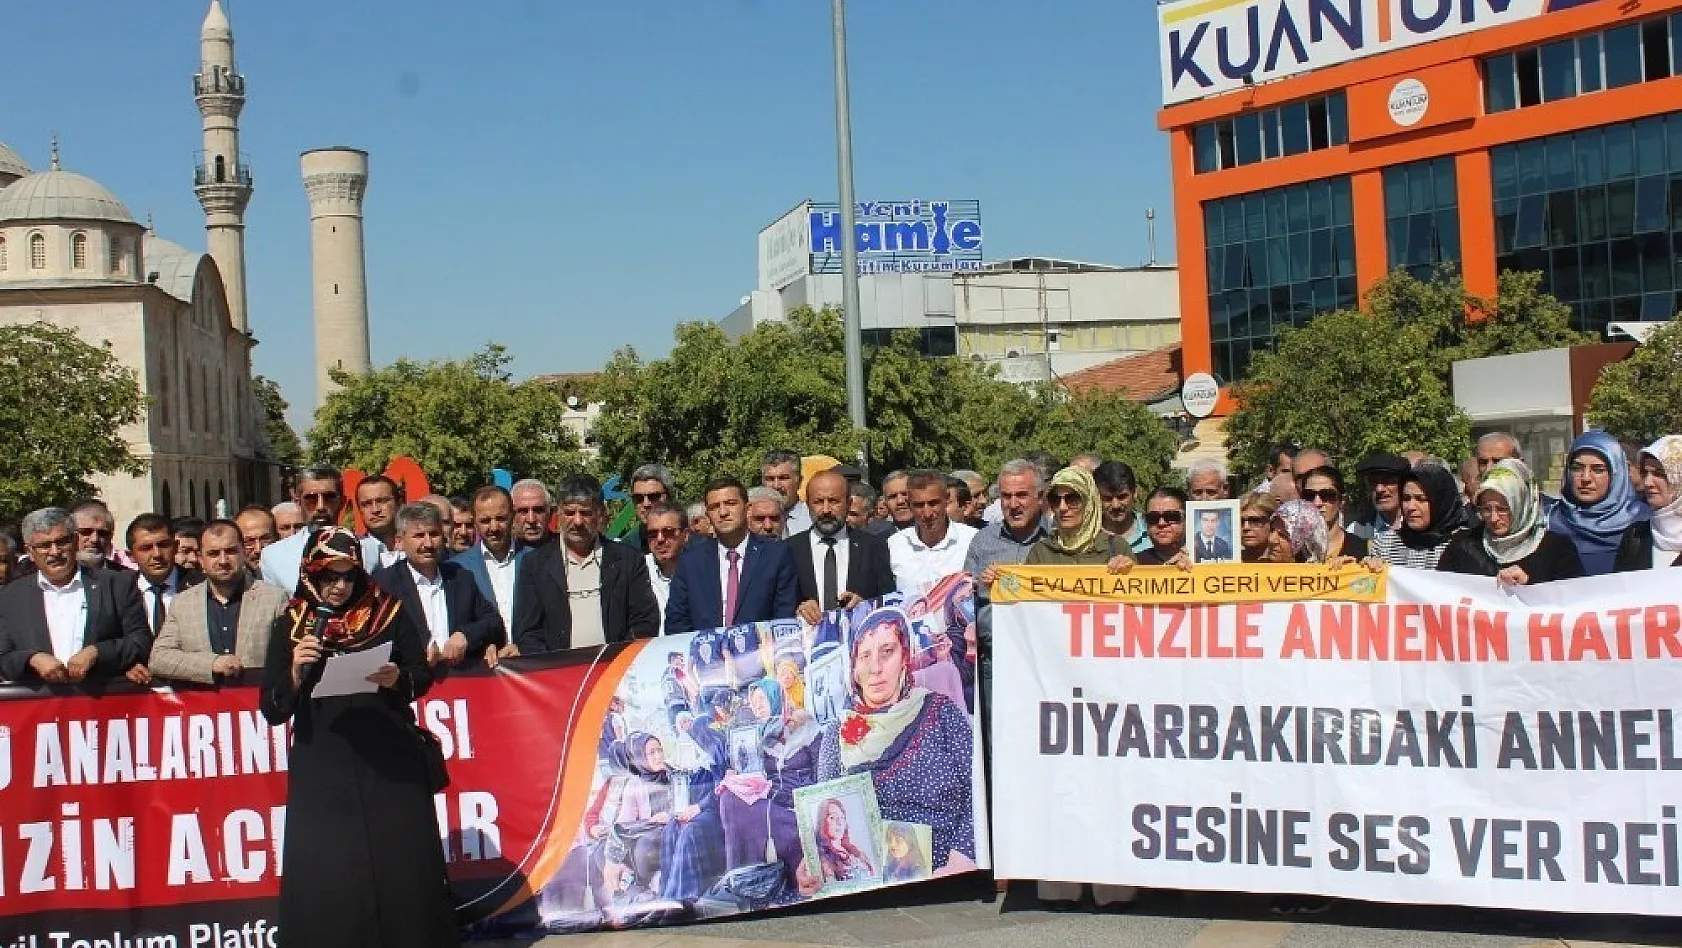 Diyarbakır Annelerine Malatya'dan destek sürüyor 